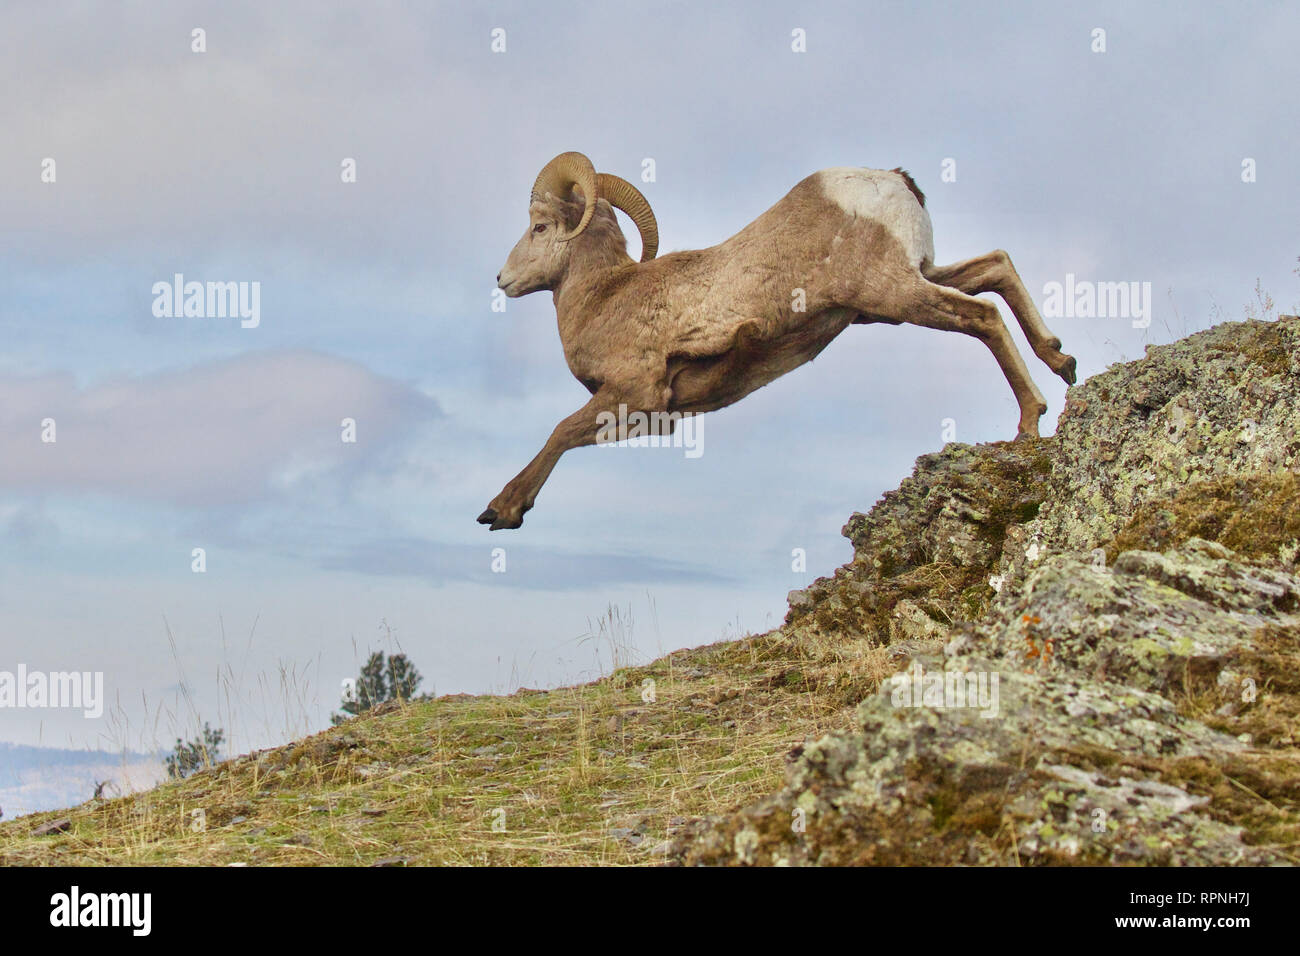 Rocky Mountain Bighorn - una ram salta da un dirupo roccioso (presentato come prese, non photoshopped) Foto Stock